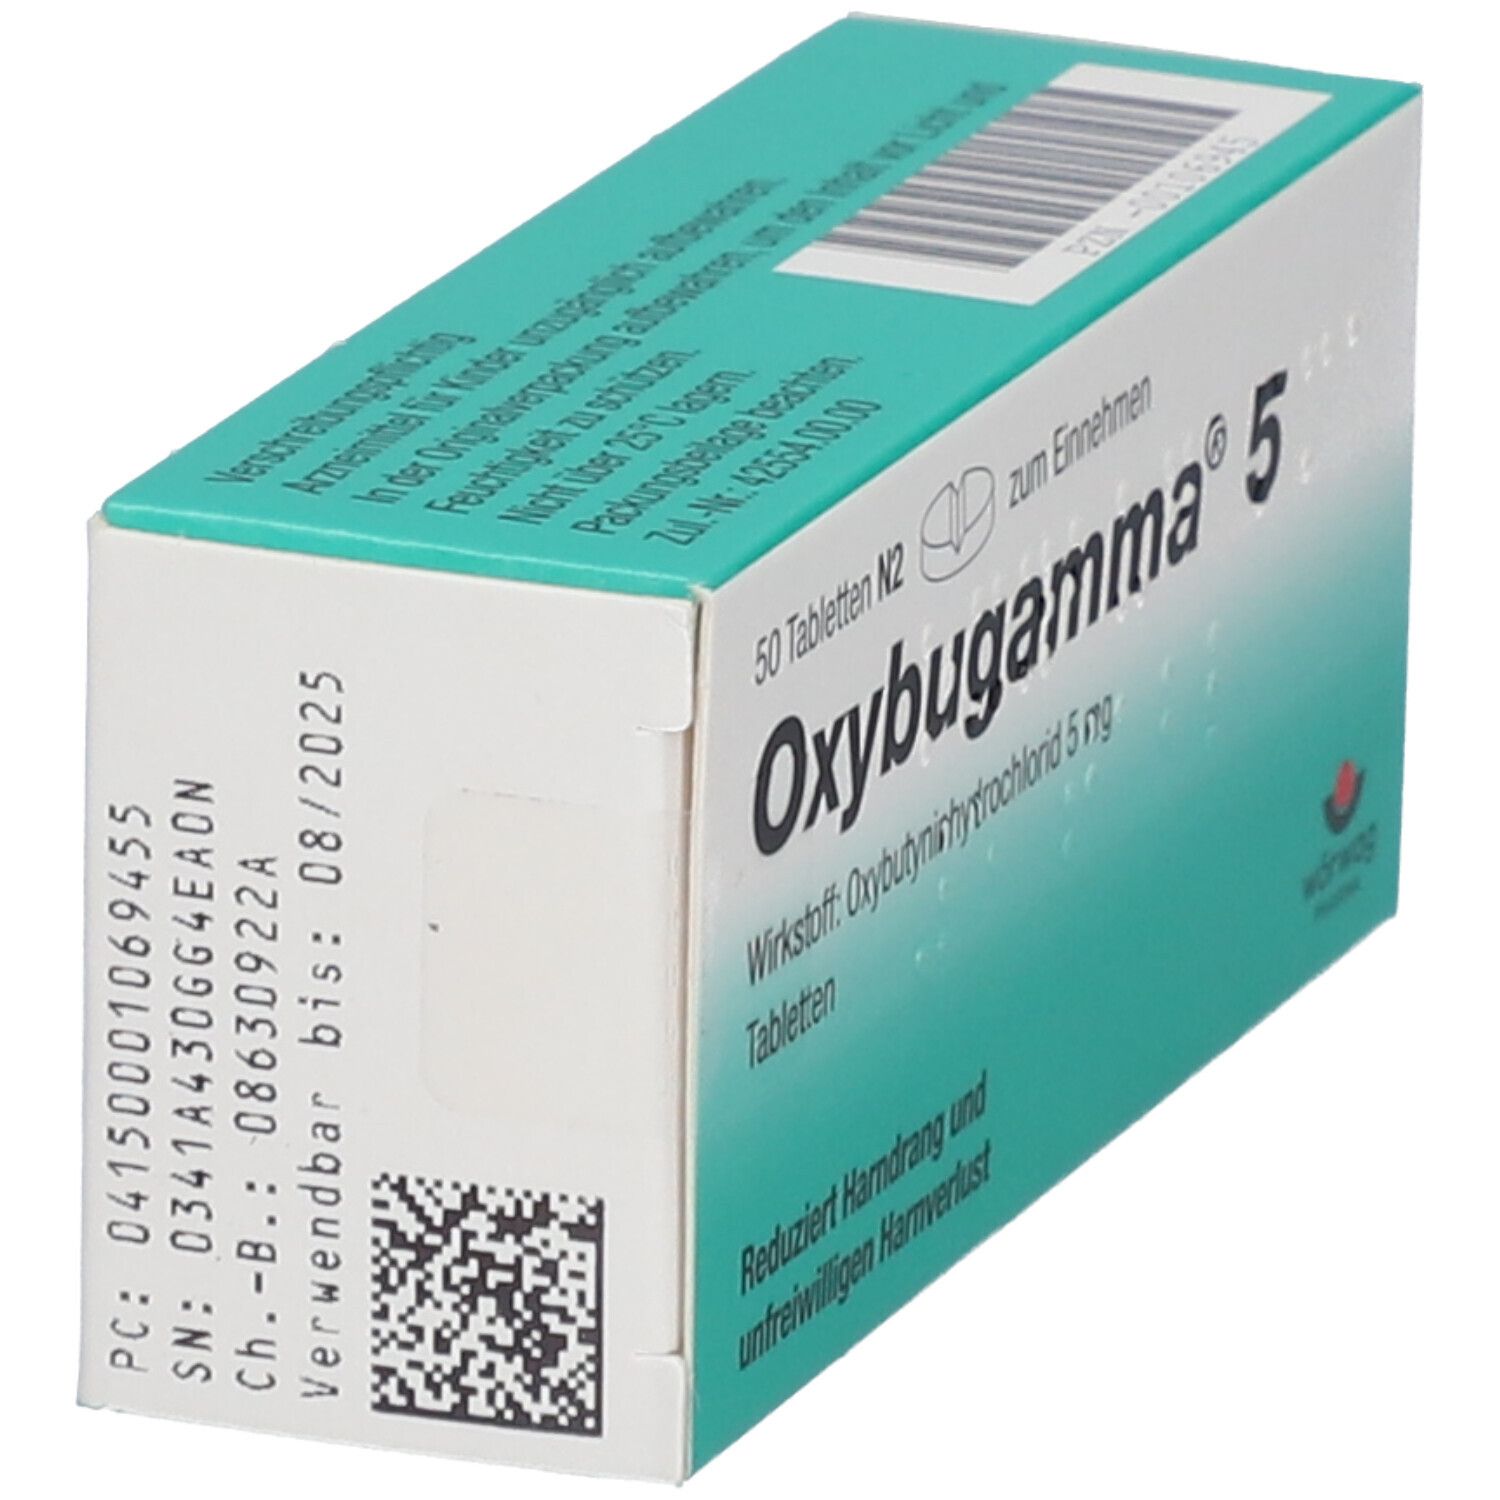 Oxybugamma 5